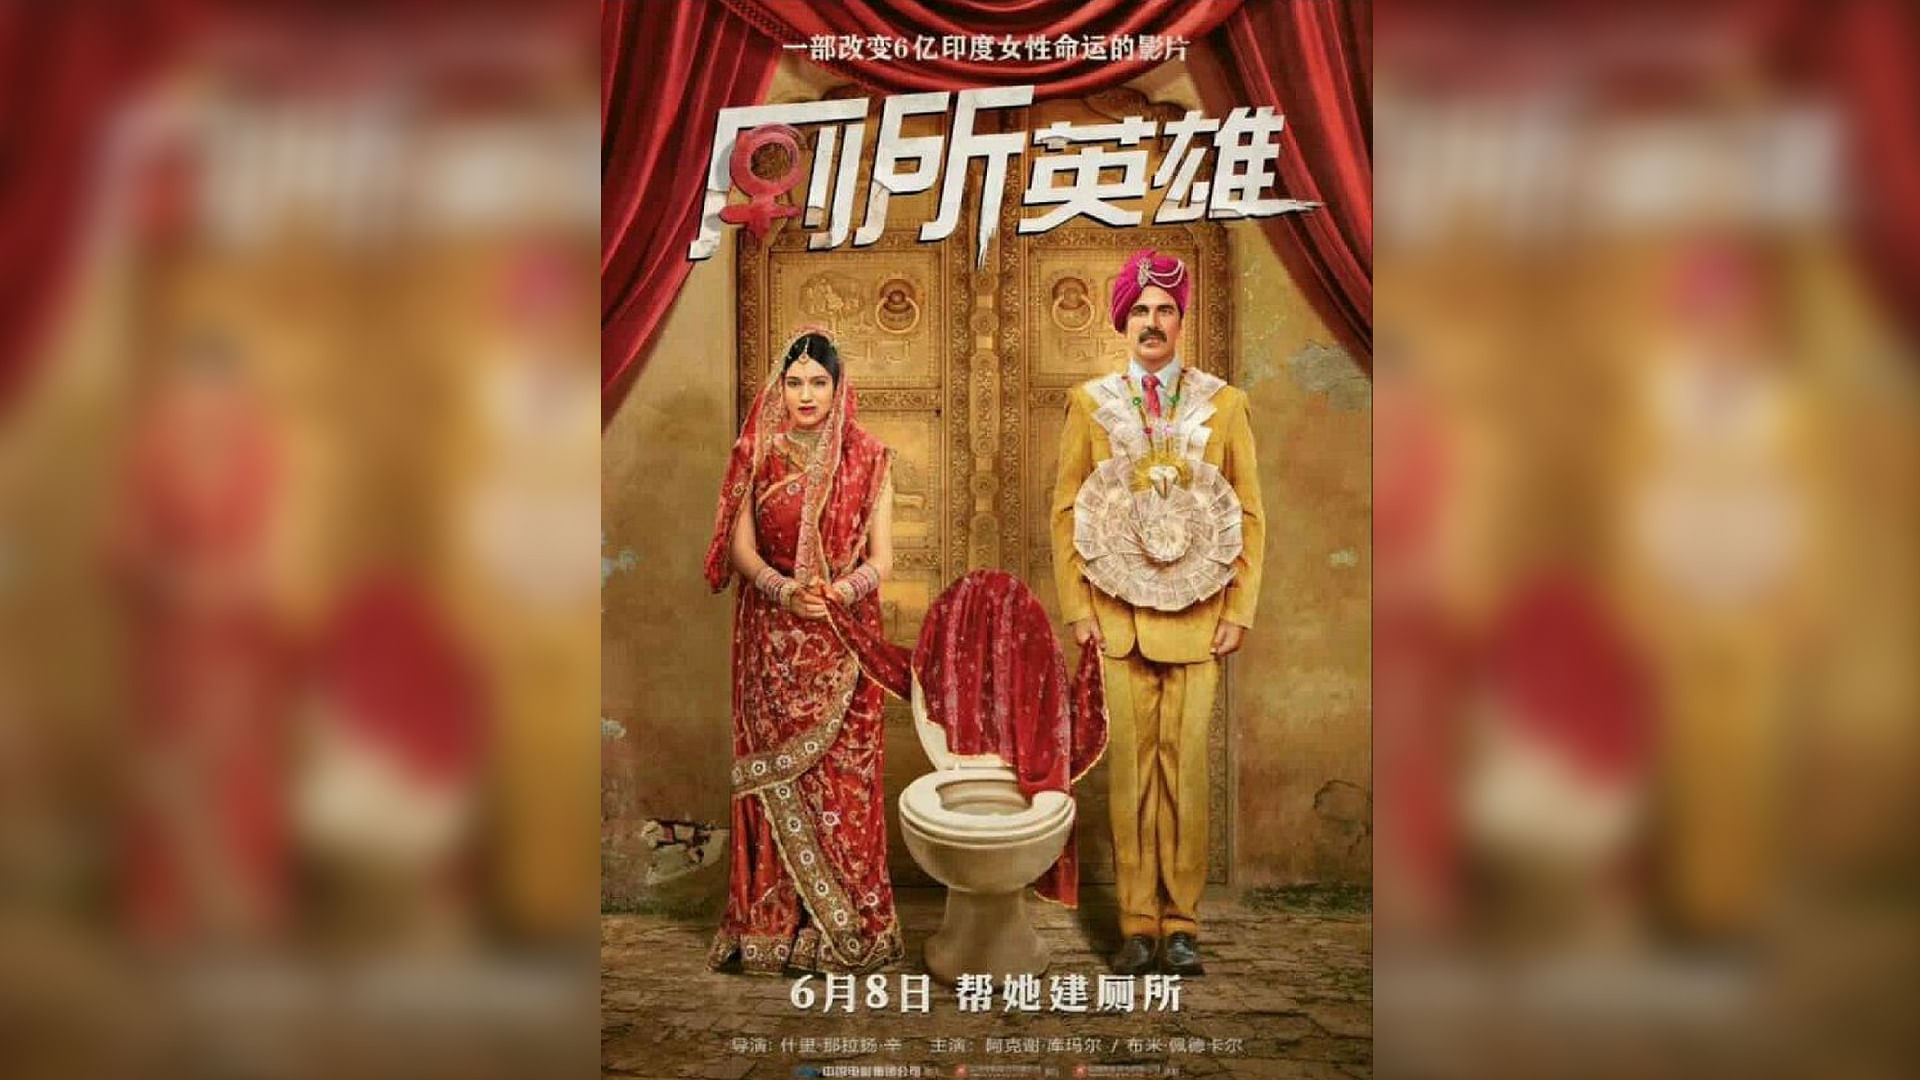 अक्षय कुमार की फिल्म ने चीन में मचाई धूम, एक दिन में कमाए 15.96 करोड़&nbsp;